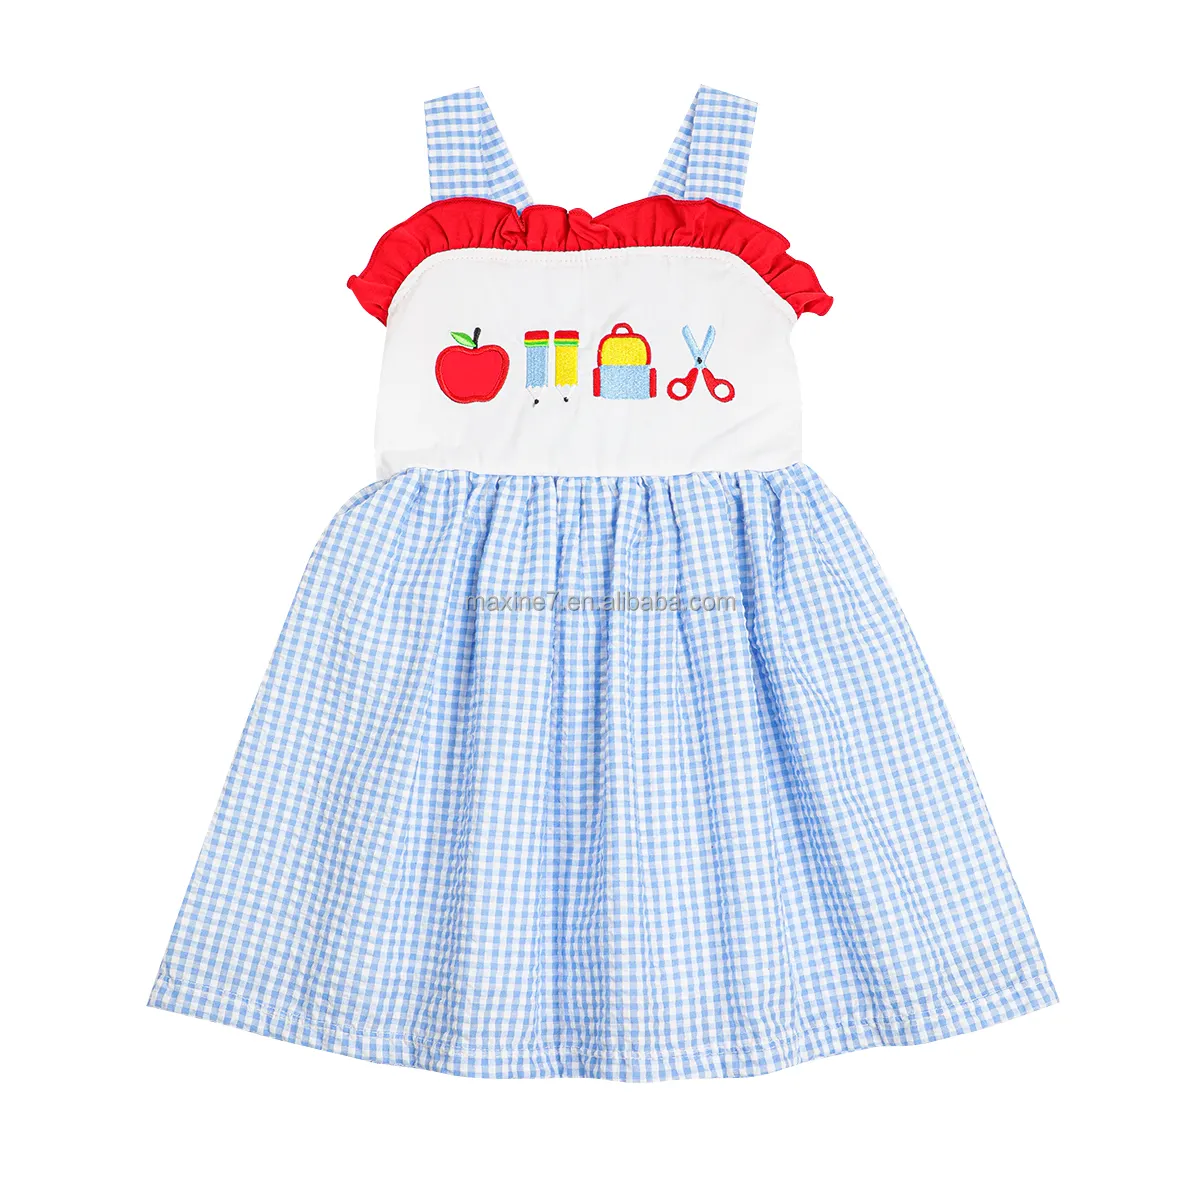 Boutique-Kinderbekleidung ärmellose Mädchenkleider hochwertiges Frühjahr Rückkehr zur Schule Stickerei individuelles Mädchenkleid